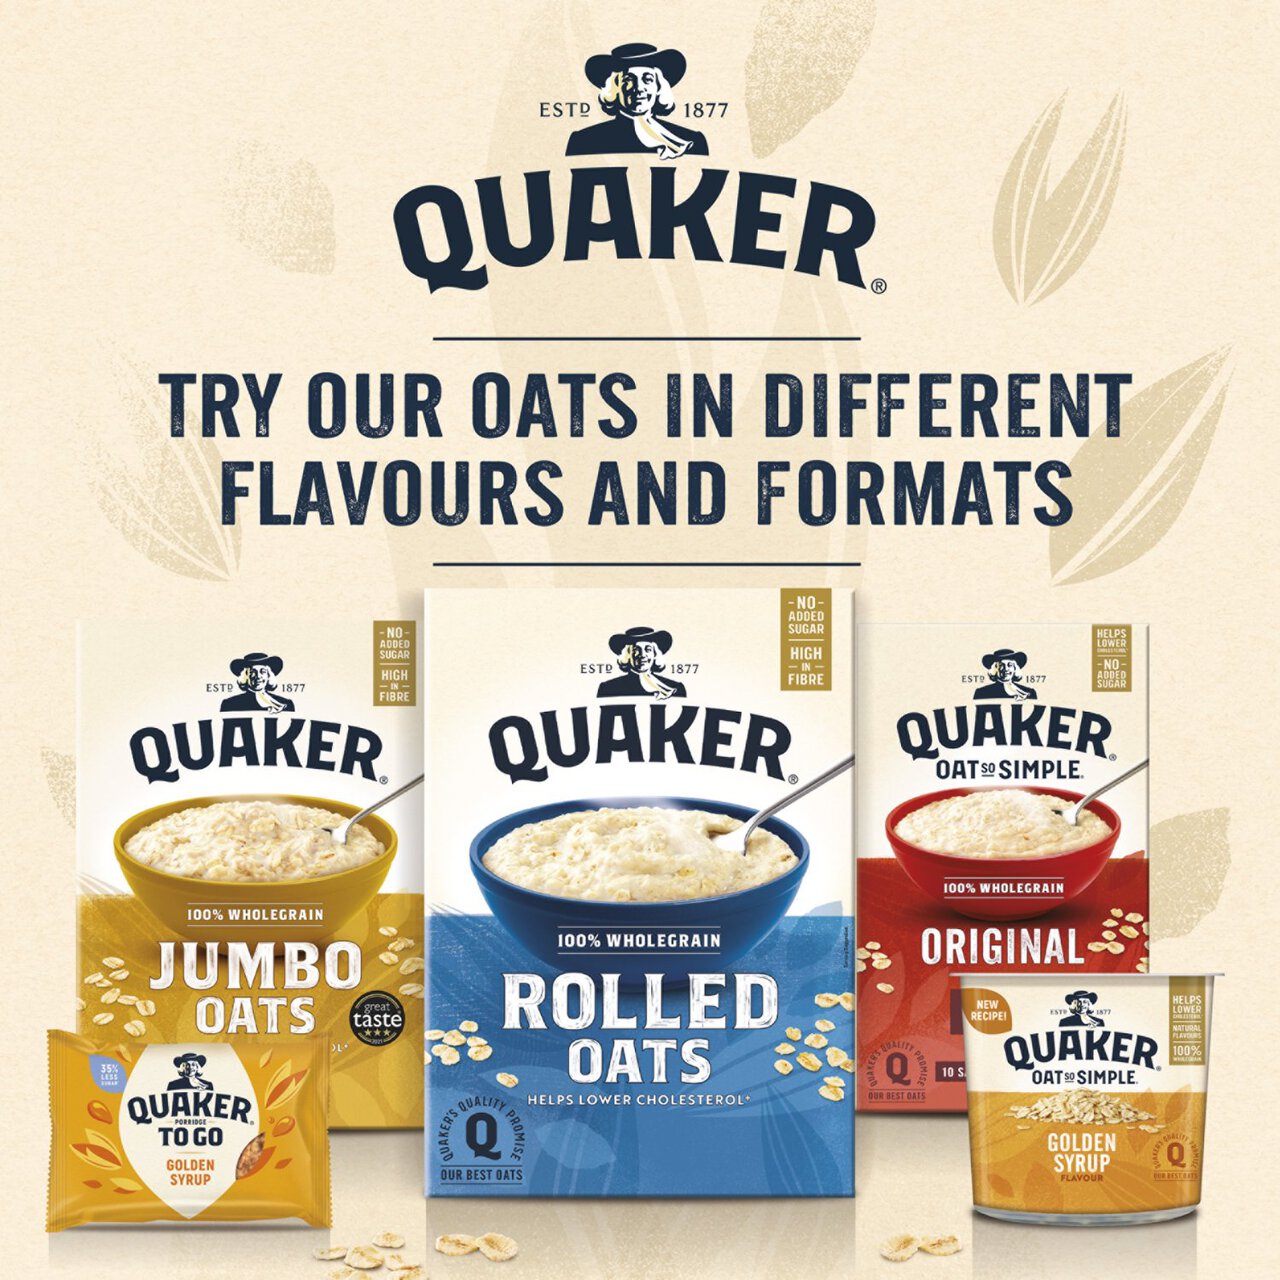 Quaker Rolled Oats Porridge Cereal 1kg